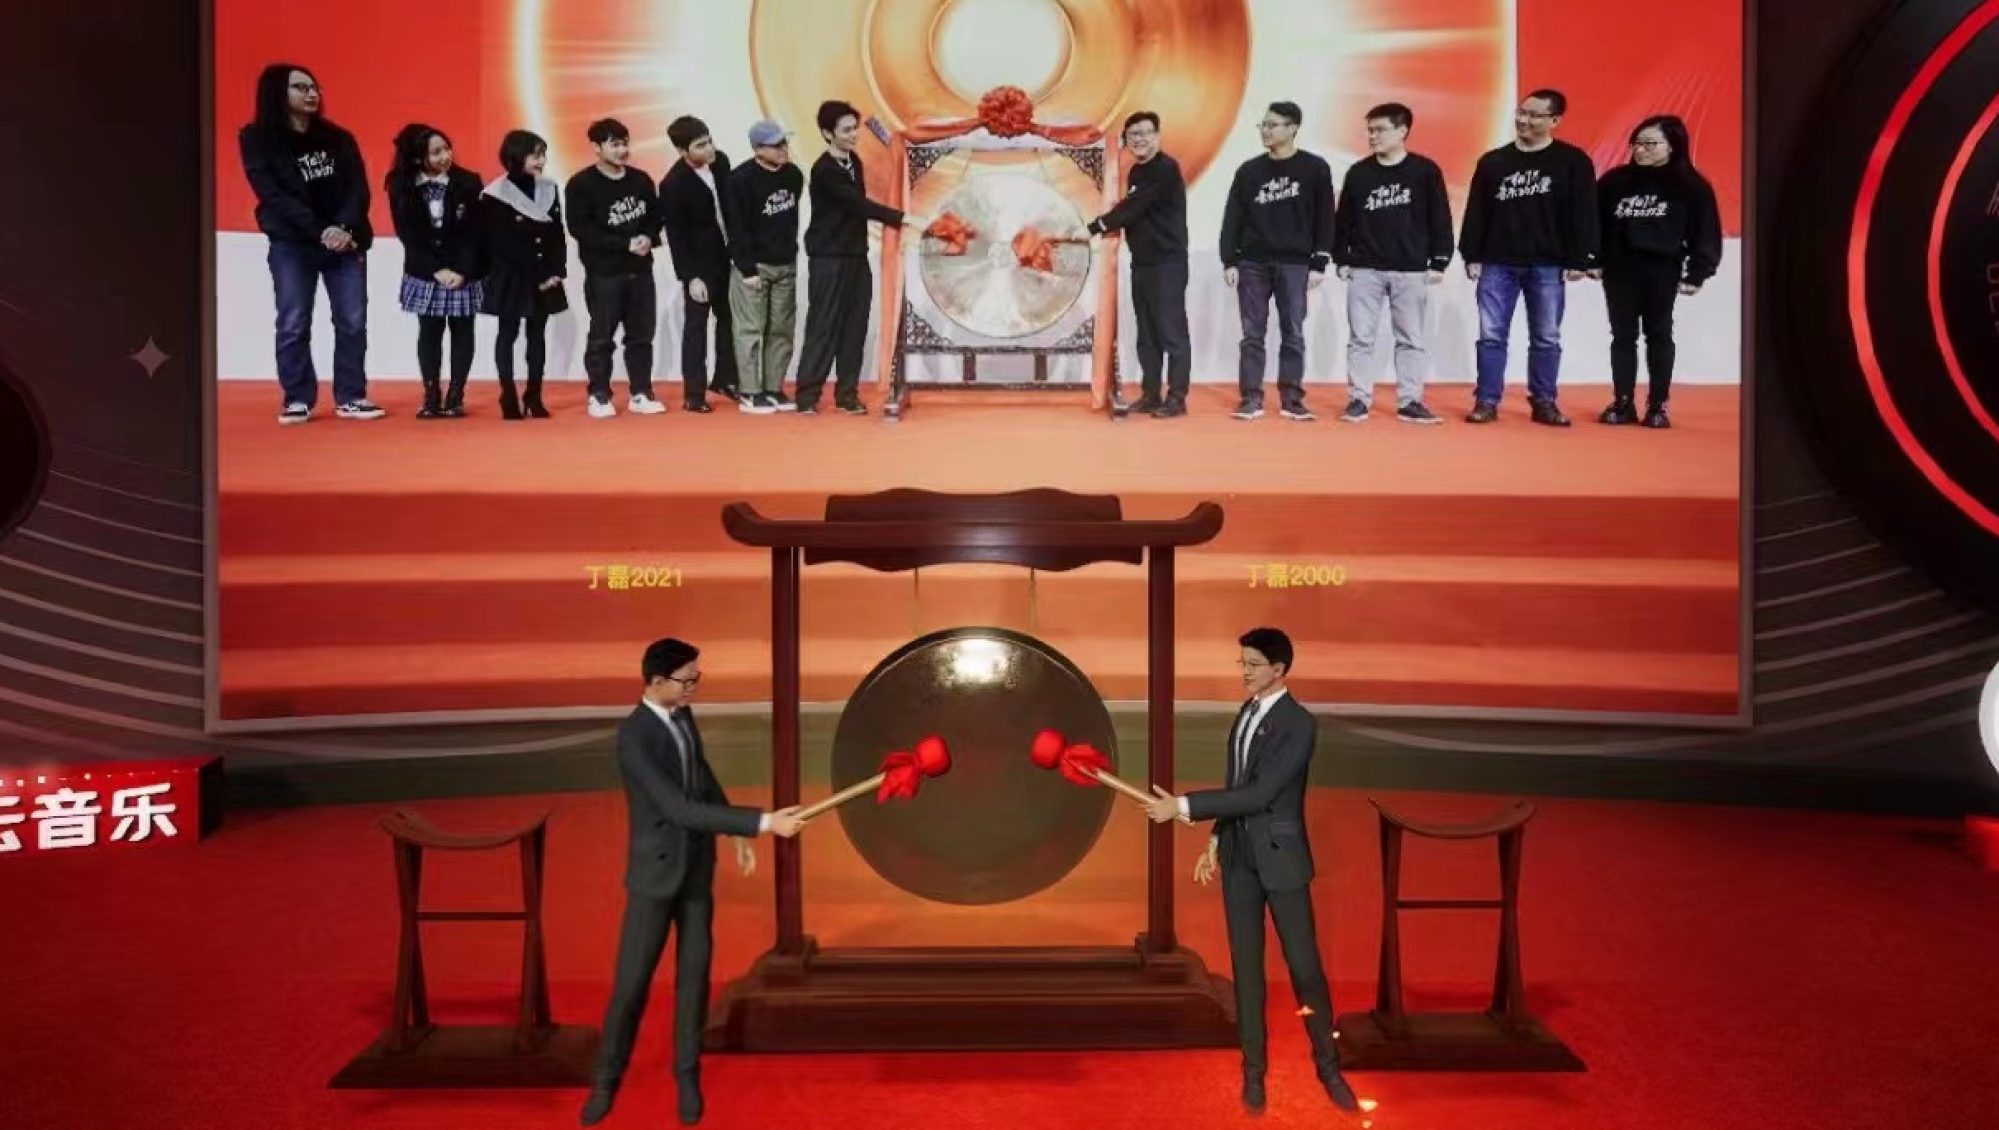 Пятый справа на сцене основатель и генеральный директор NetEase Уильям Дин Ли одобрил возможности Yaotai во время виртуальной церемонии листинга в Гонконге в Cloud Village, сервисе потоковой передачи музыки компании, в декабре прошлого года.  Фото: благотворительность